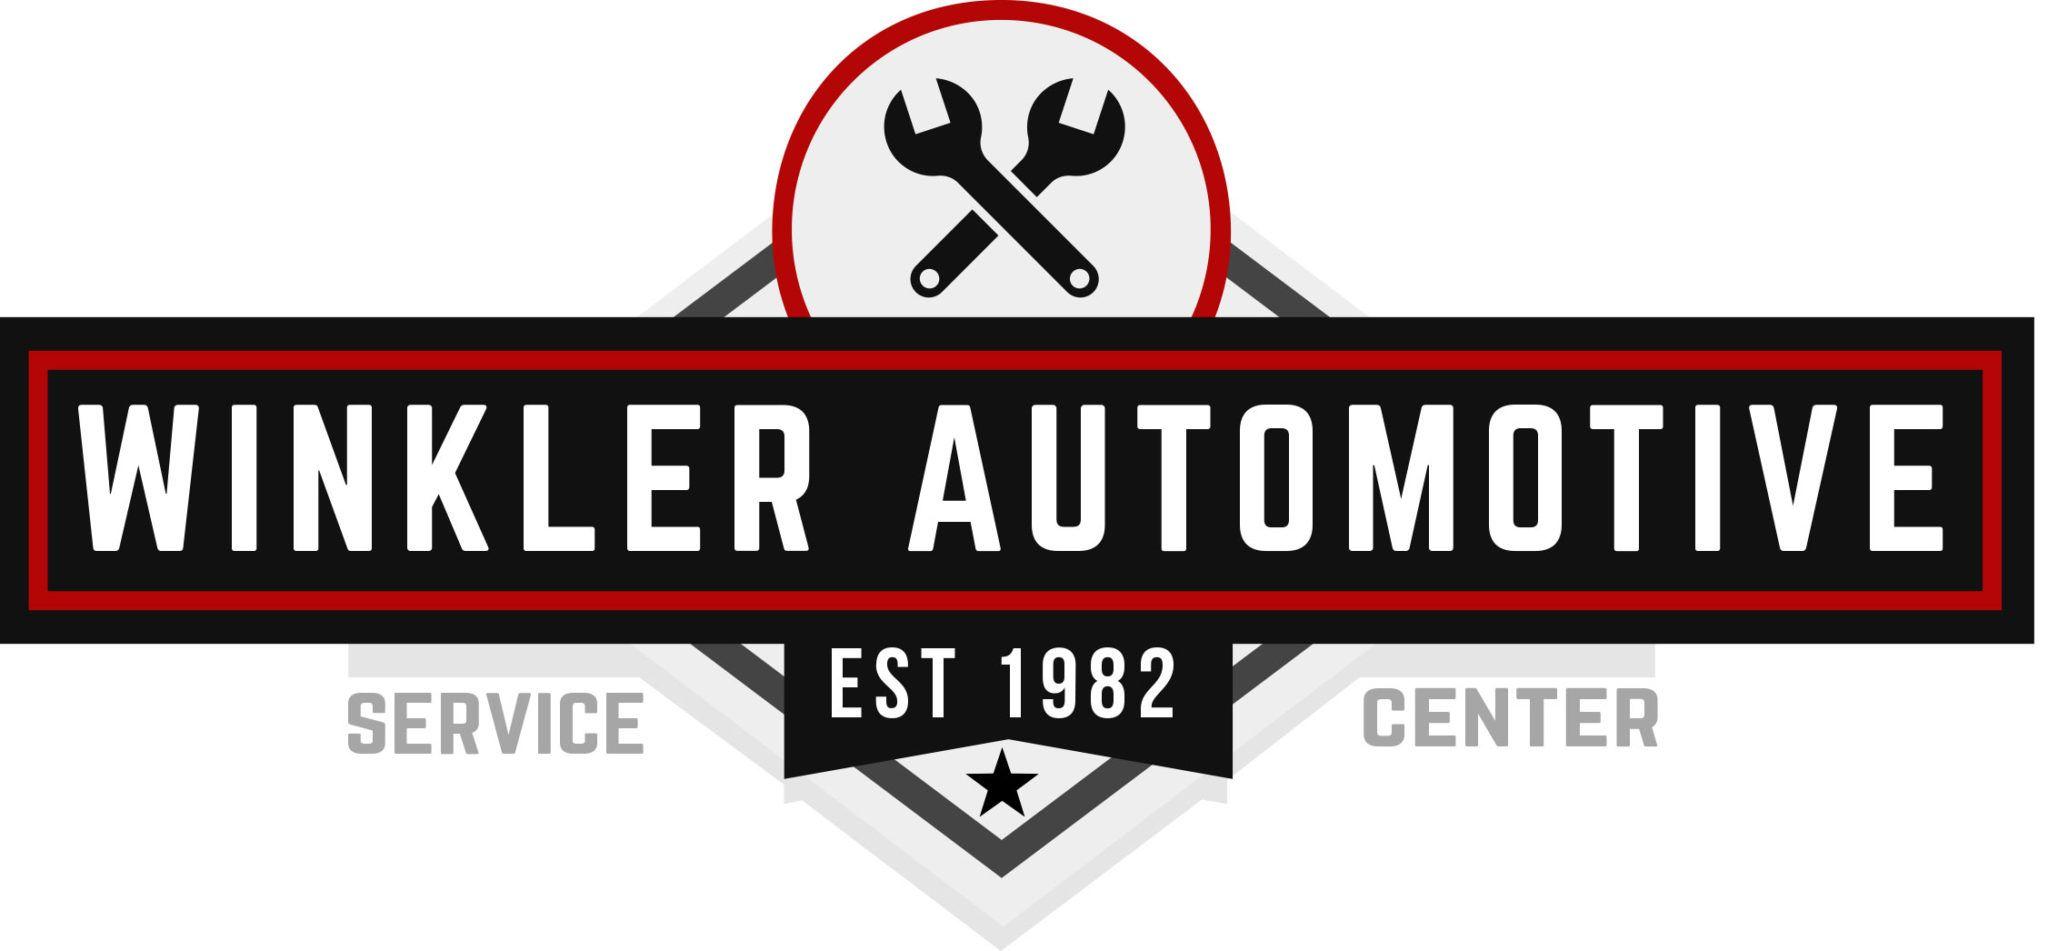 Automotive Service Center Logo - Winkler Automotive Service Center